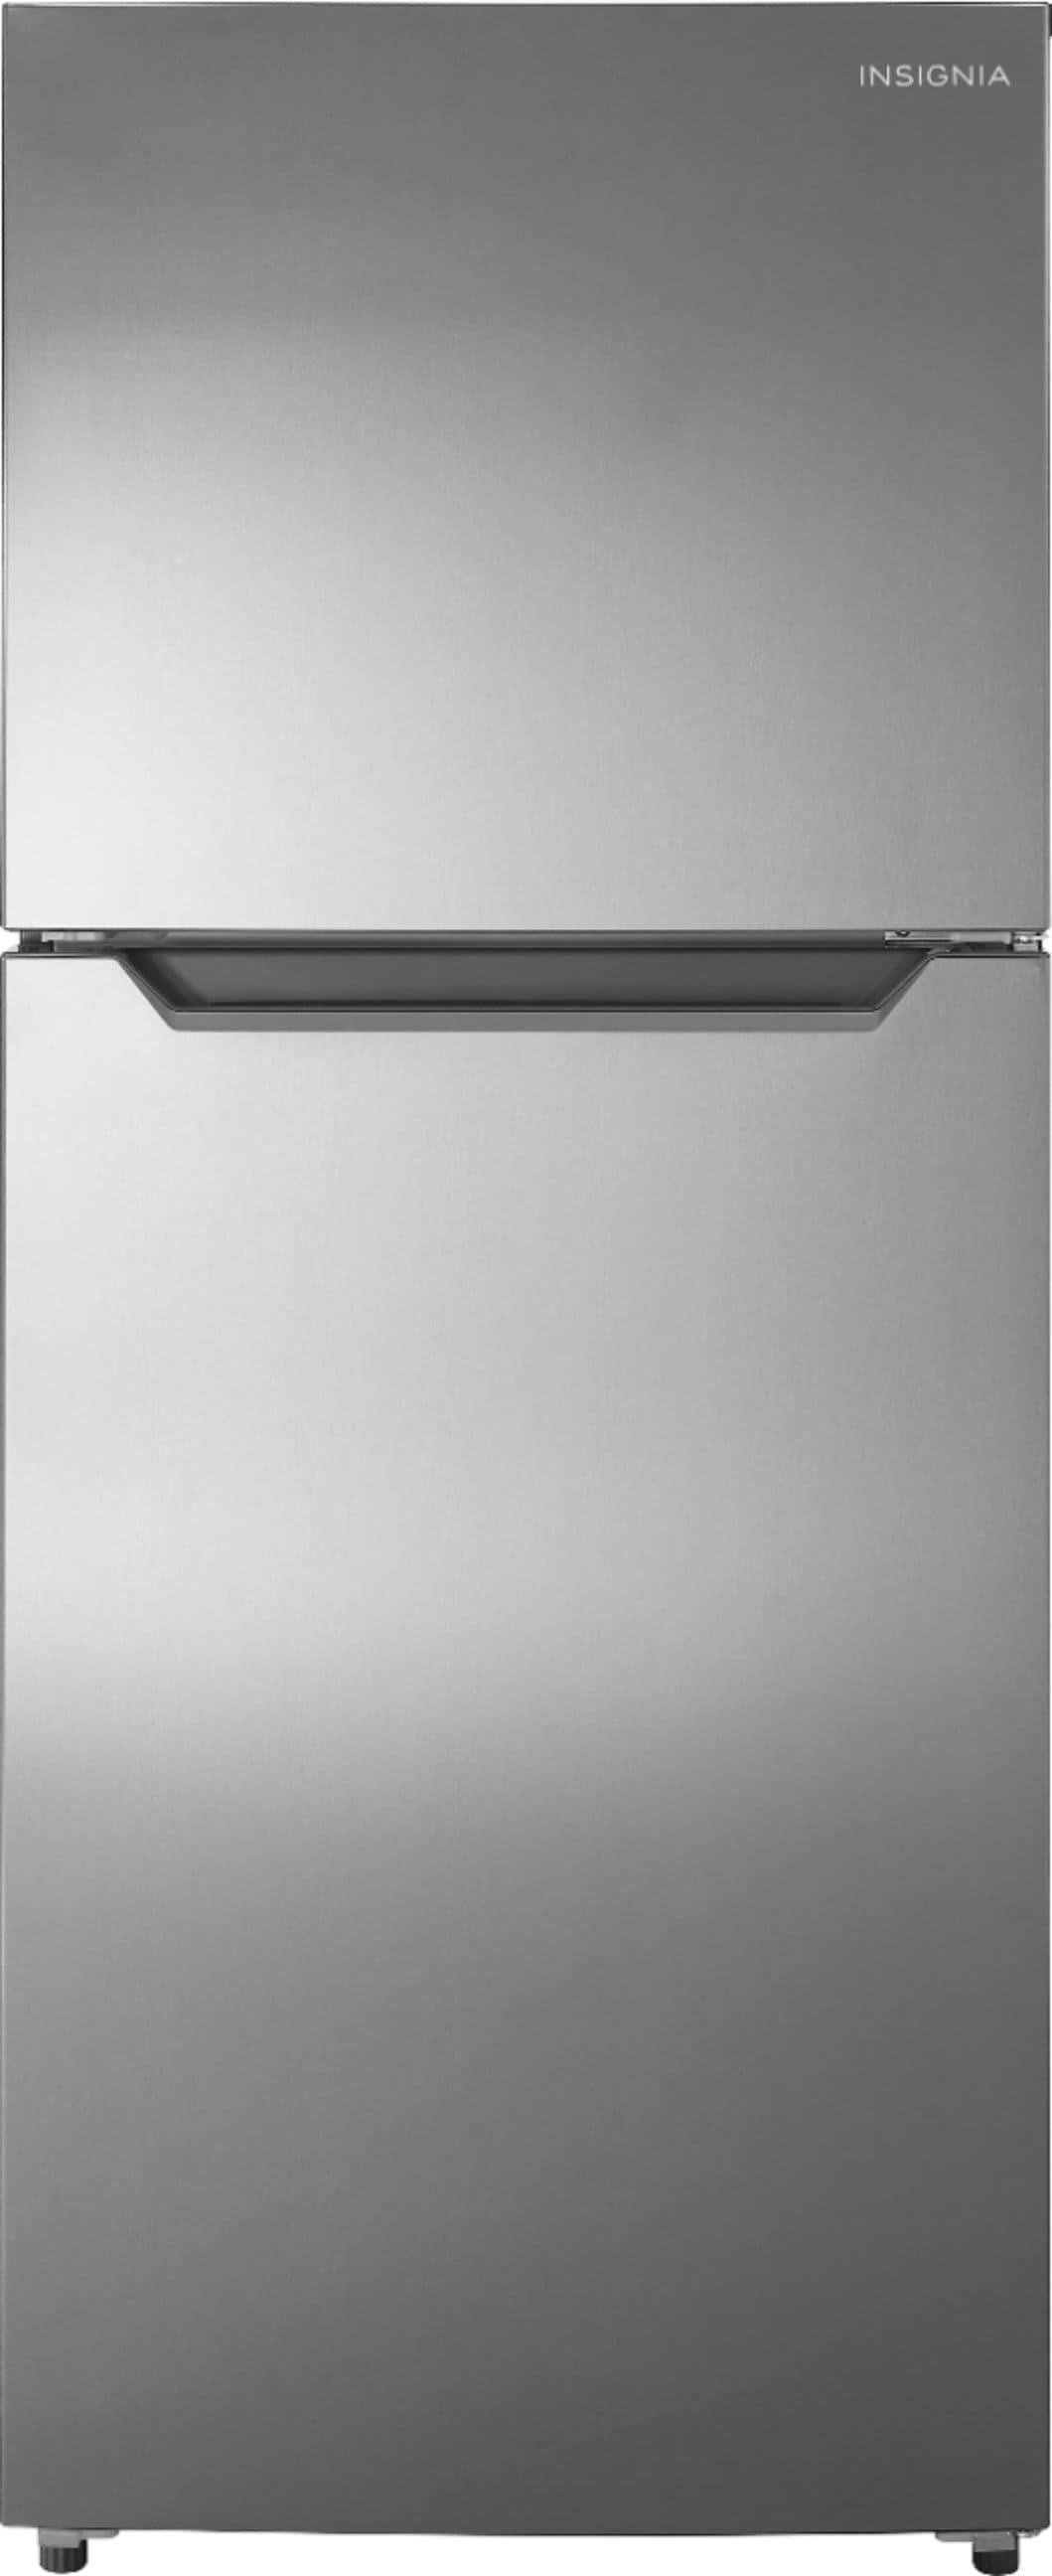 Insignia™ - 10 Cu. Ft. Top-Freezer Refrigerator with Reversible Door - Stainless steel_0